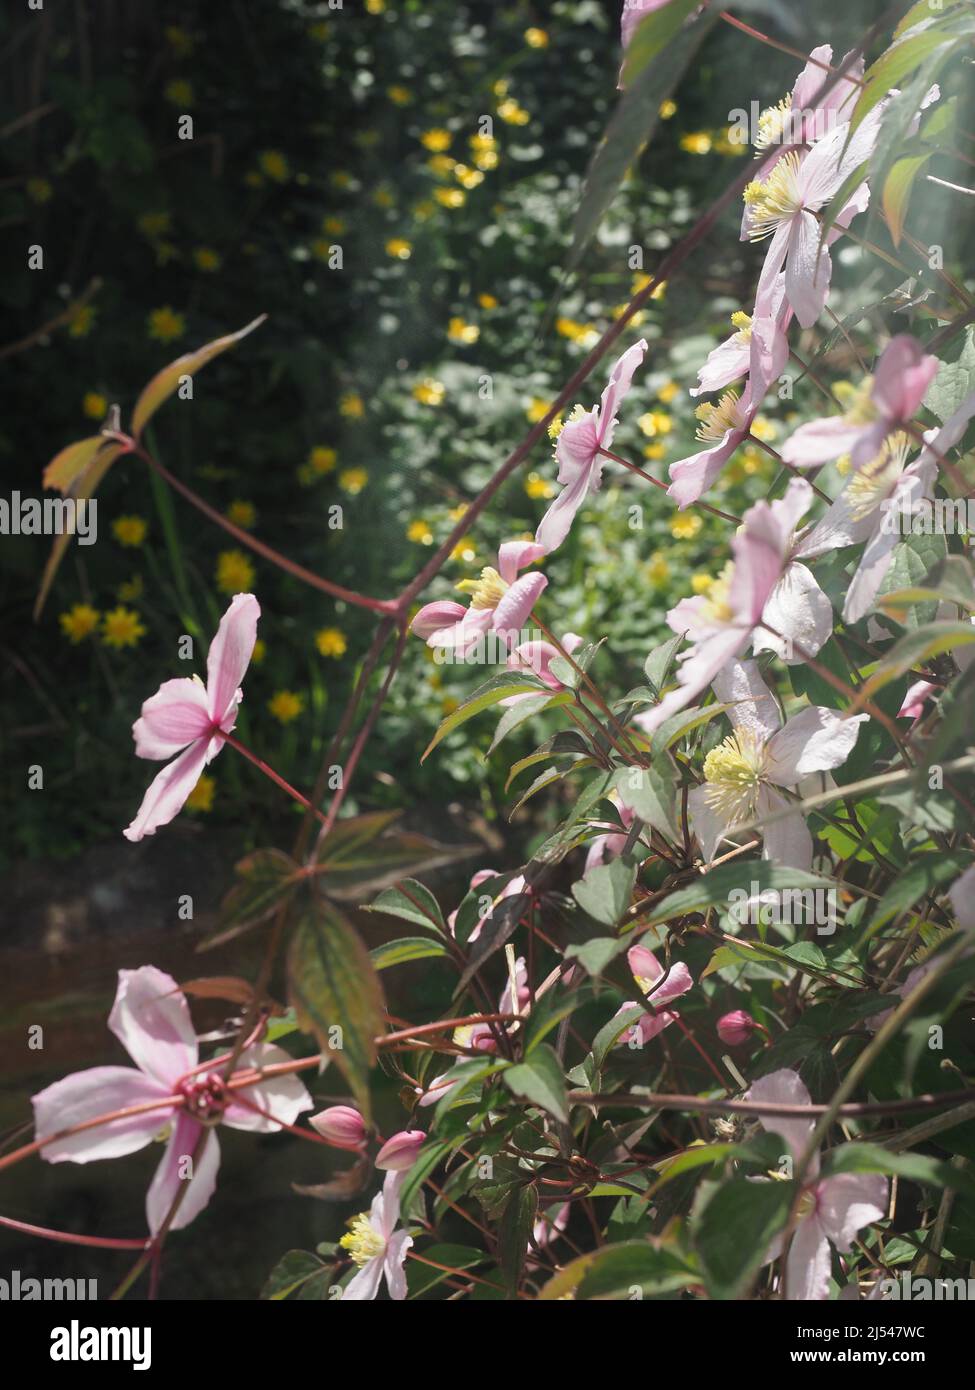 La belle fleur de clematis plante avec une profusion de fleurs rose pâle Banque D'Images